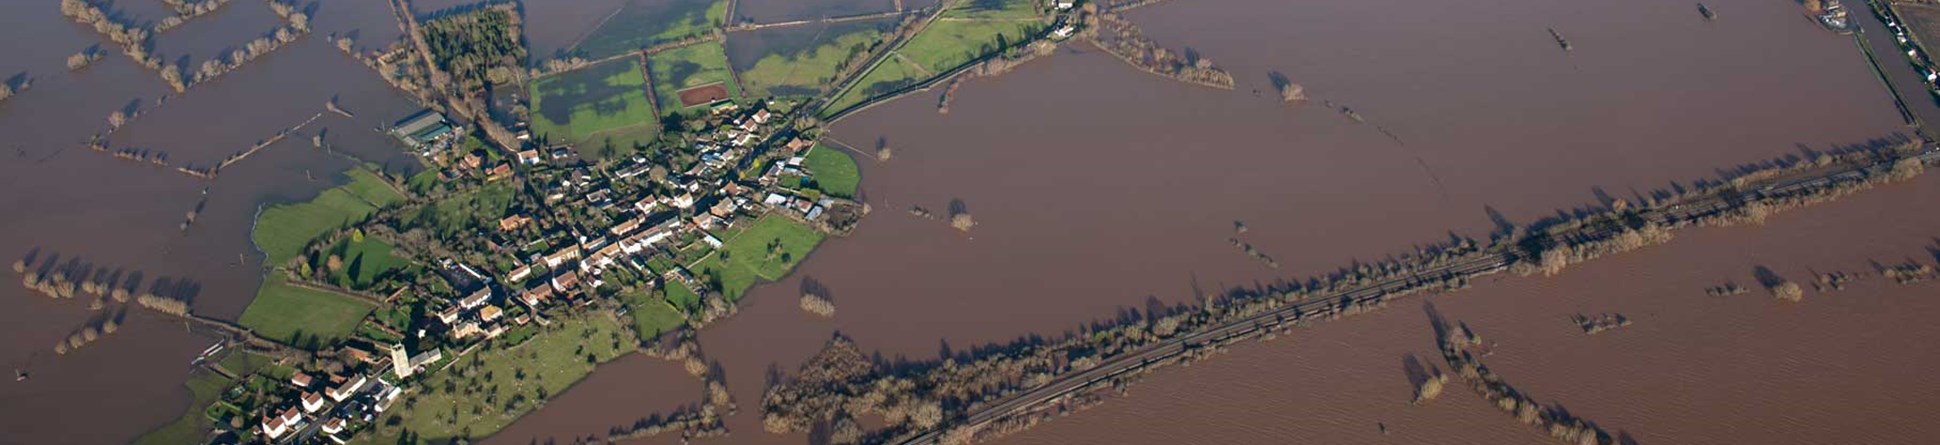 An aerial view of flooding around Muchelney, Somerset